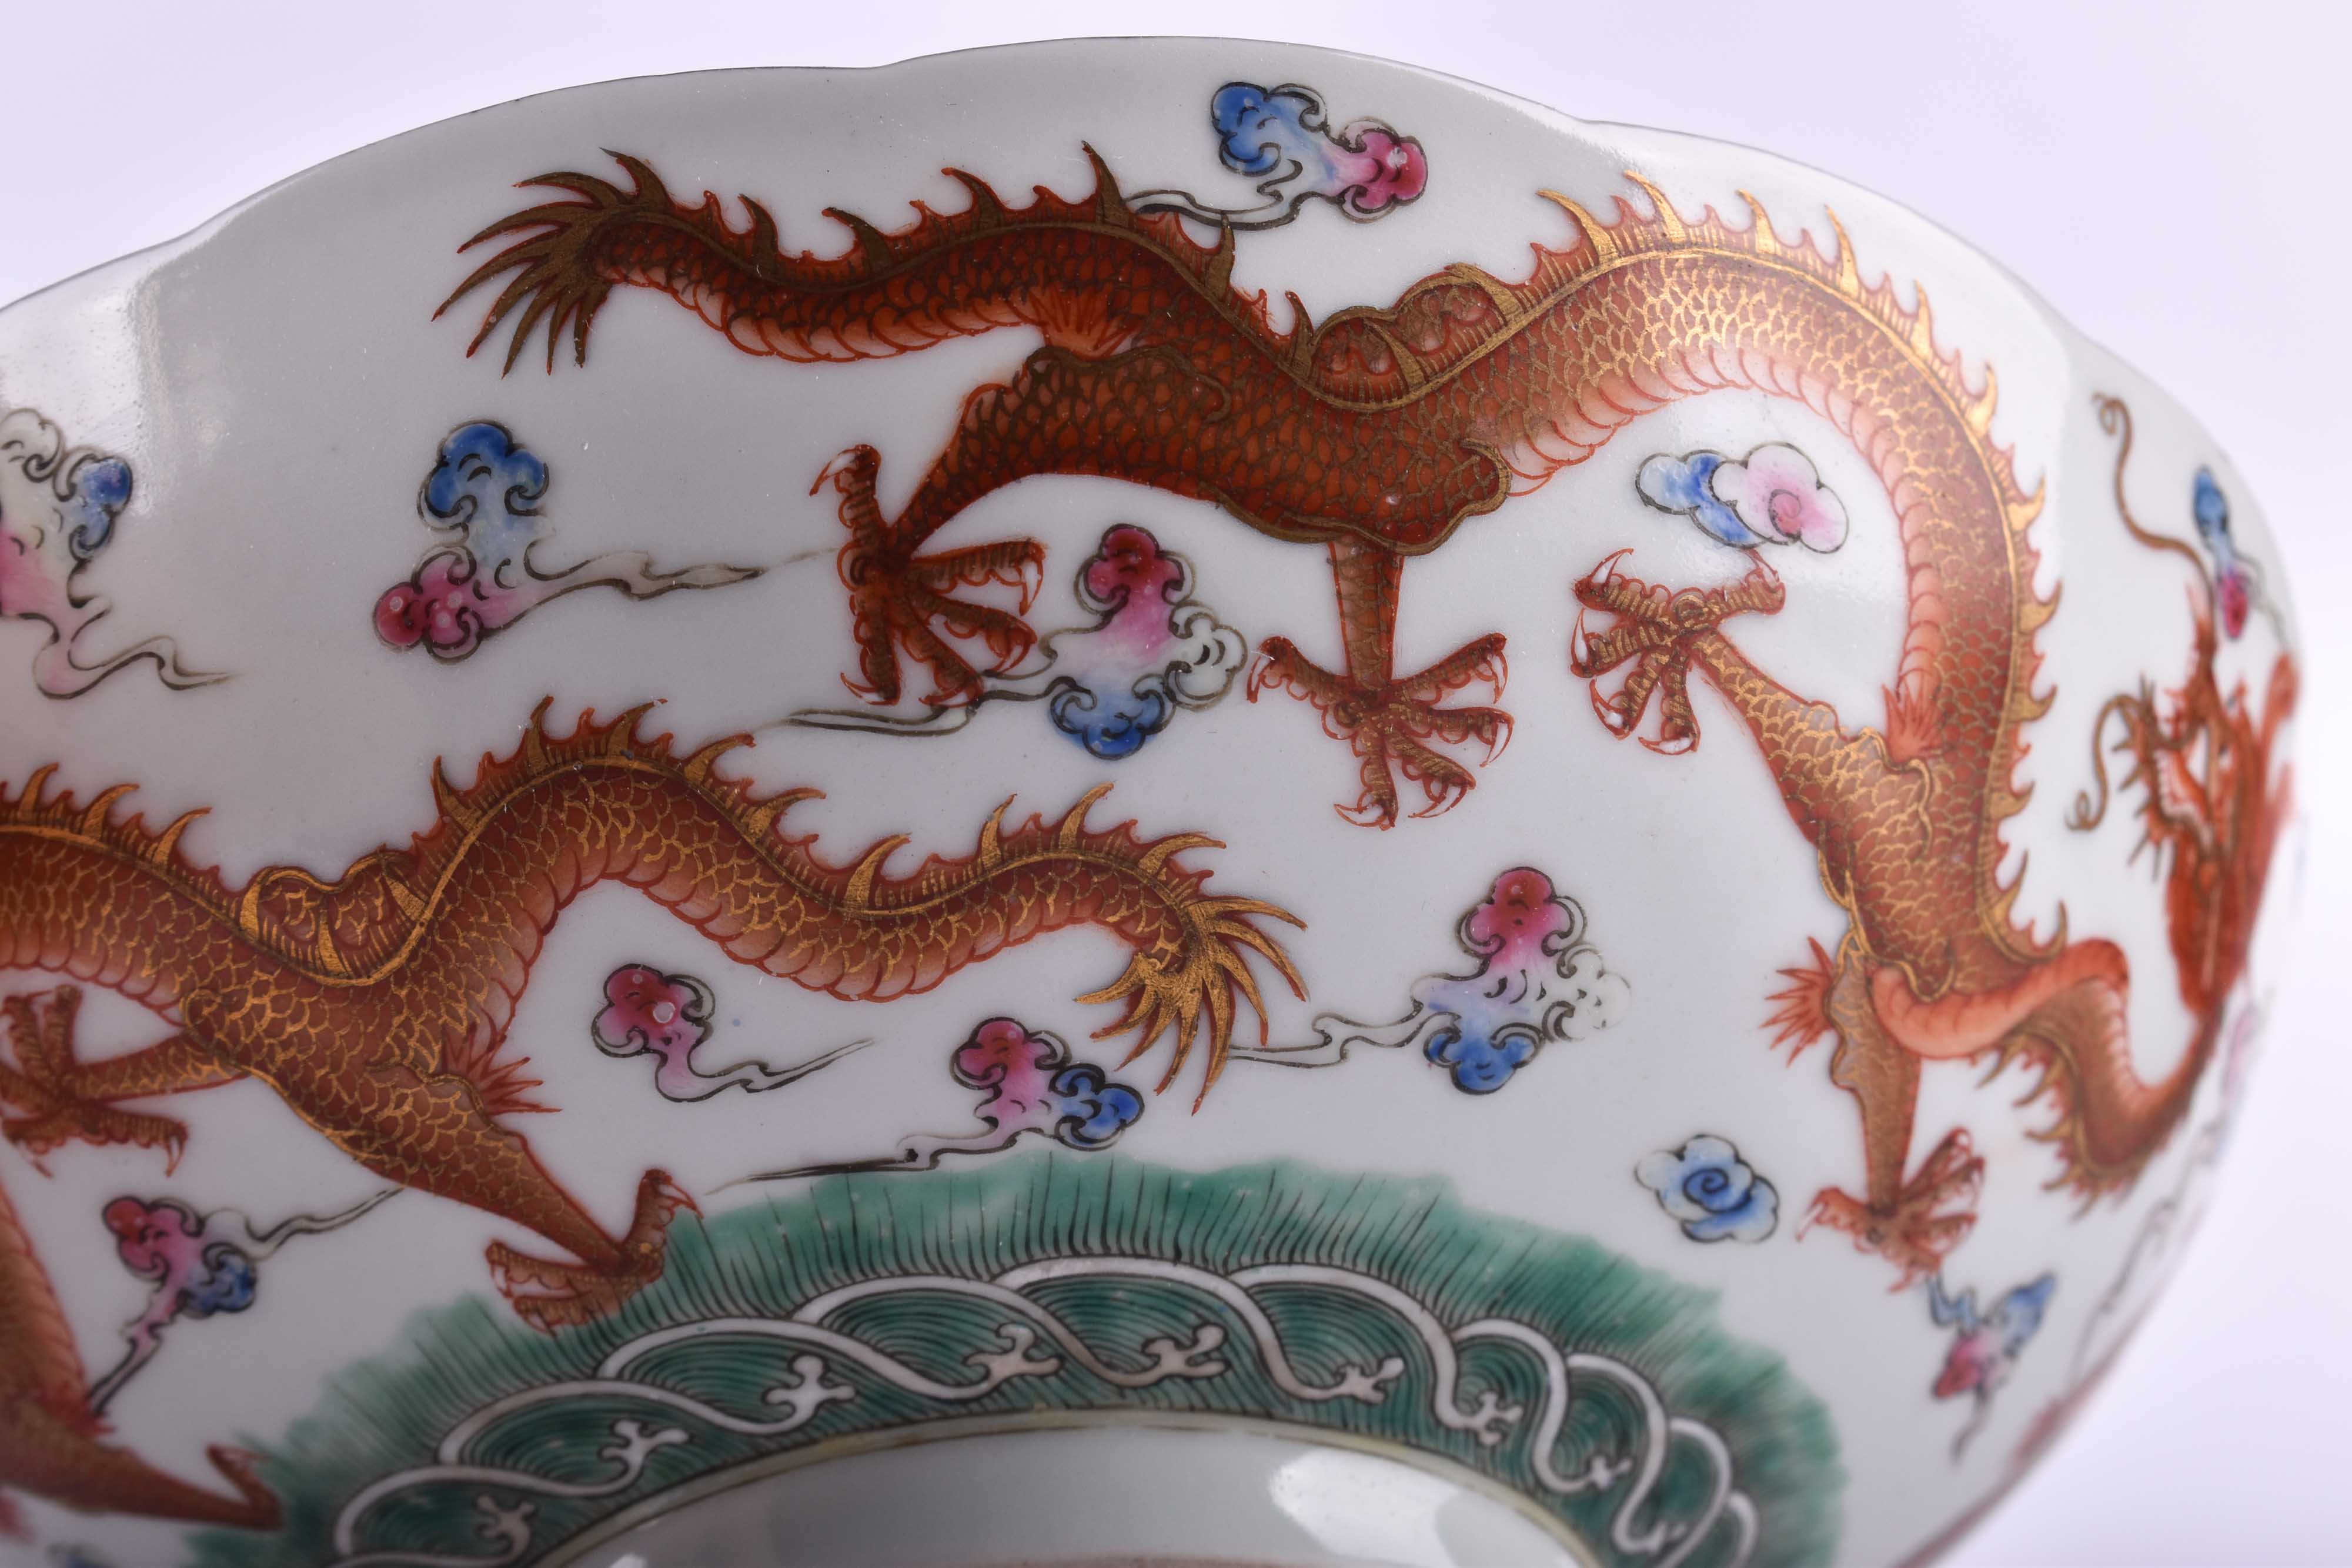  Pair of bowls China Qing dynasty - Image 10 of 12